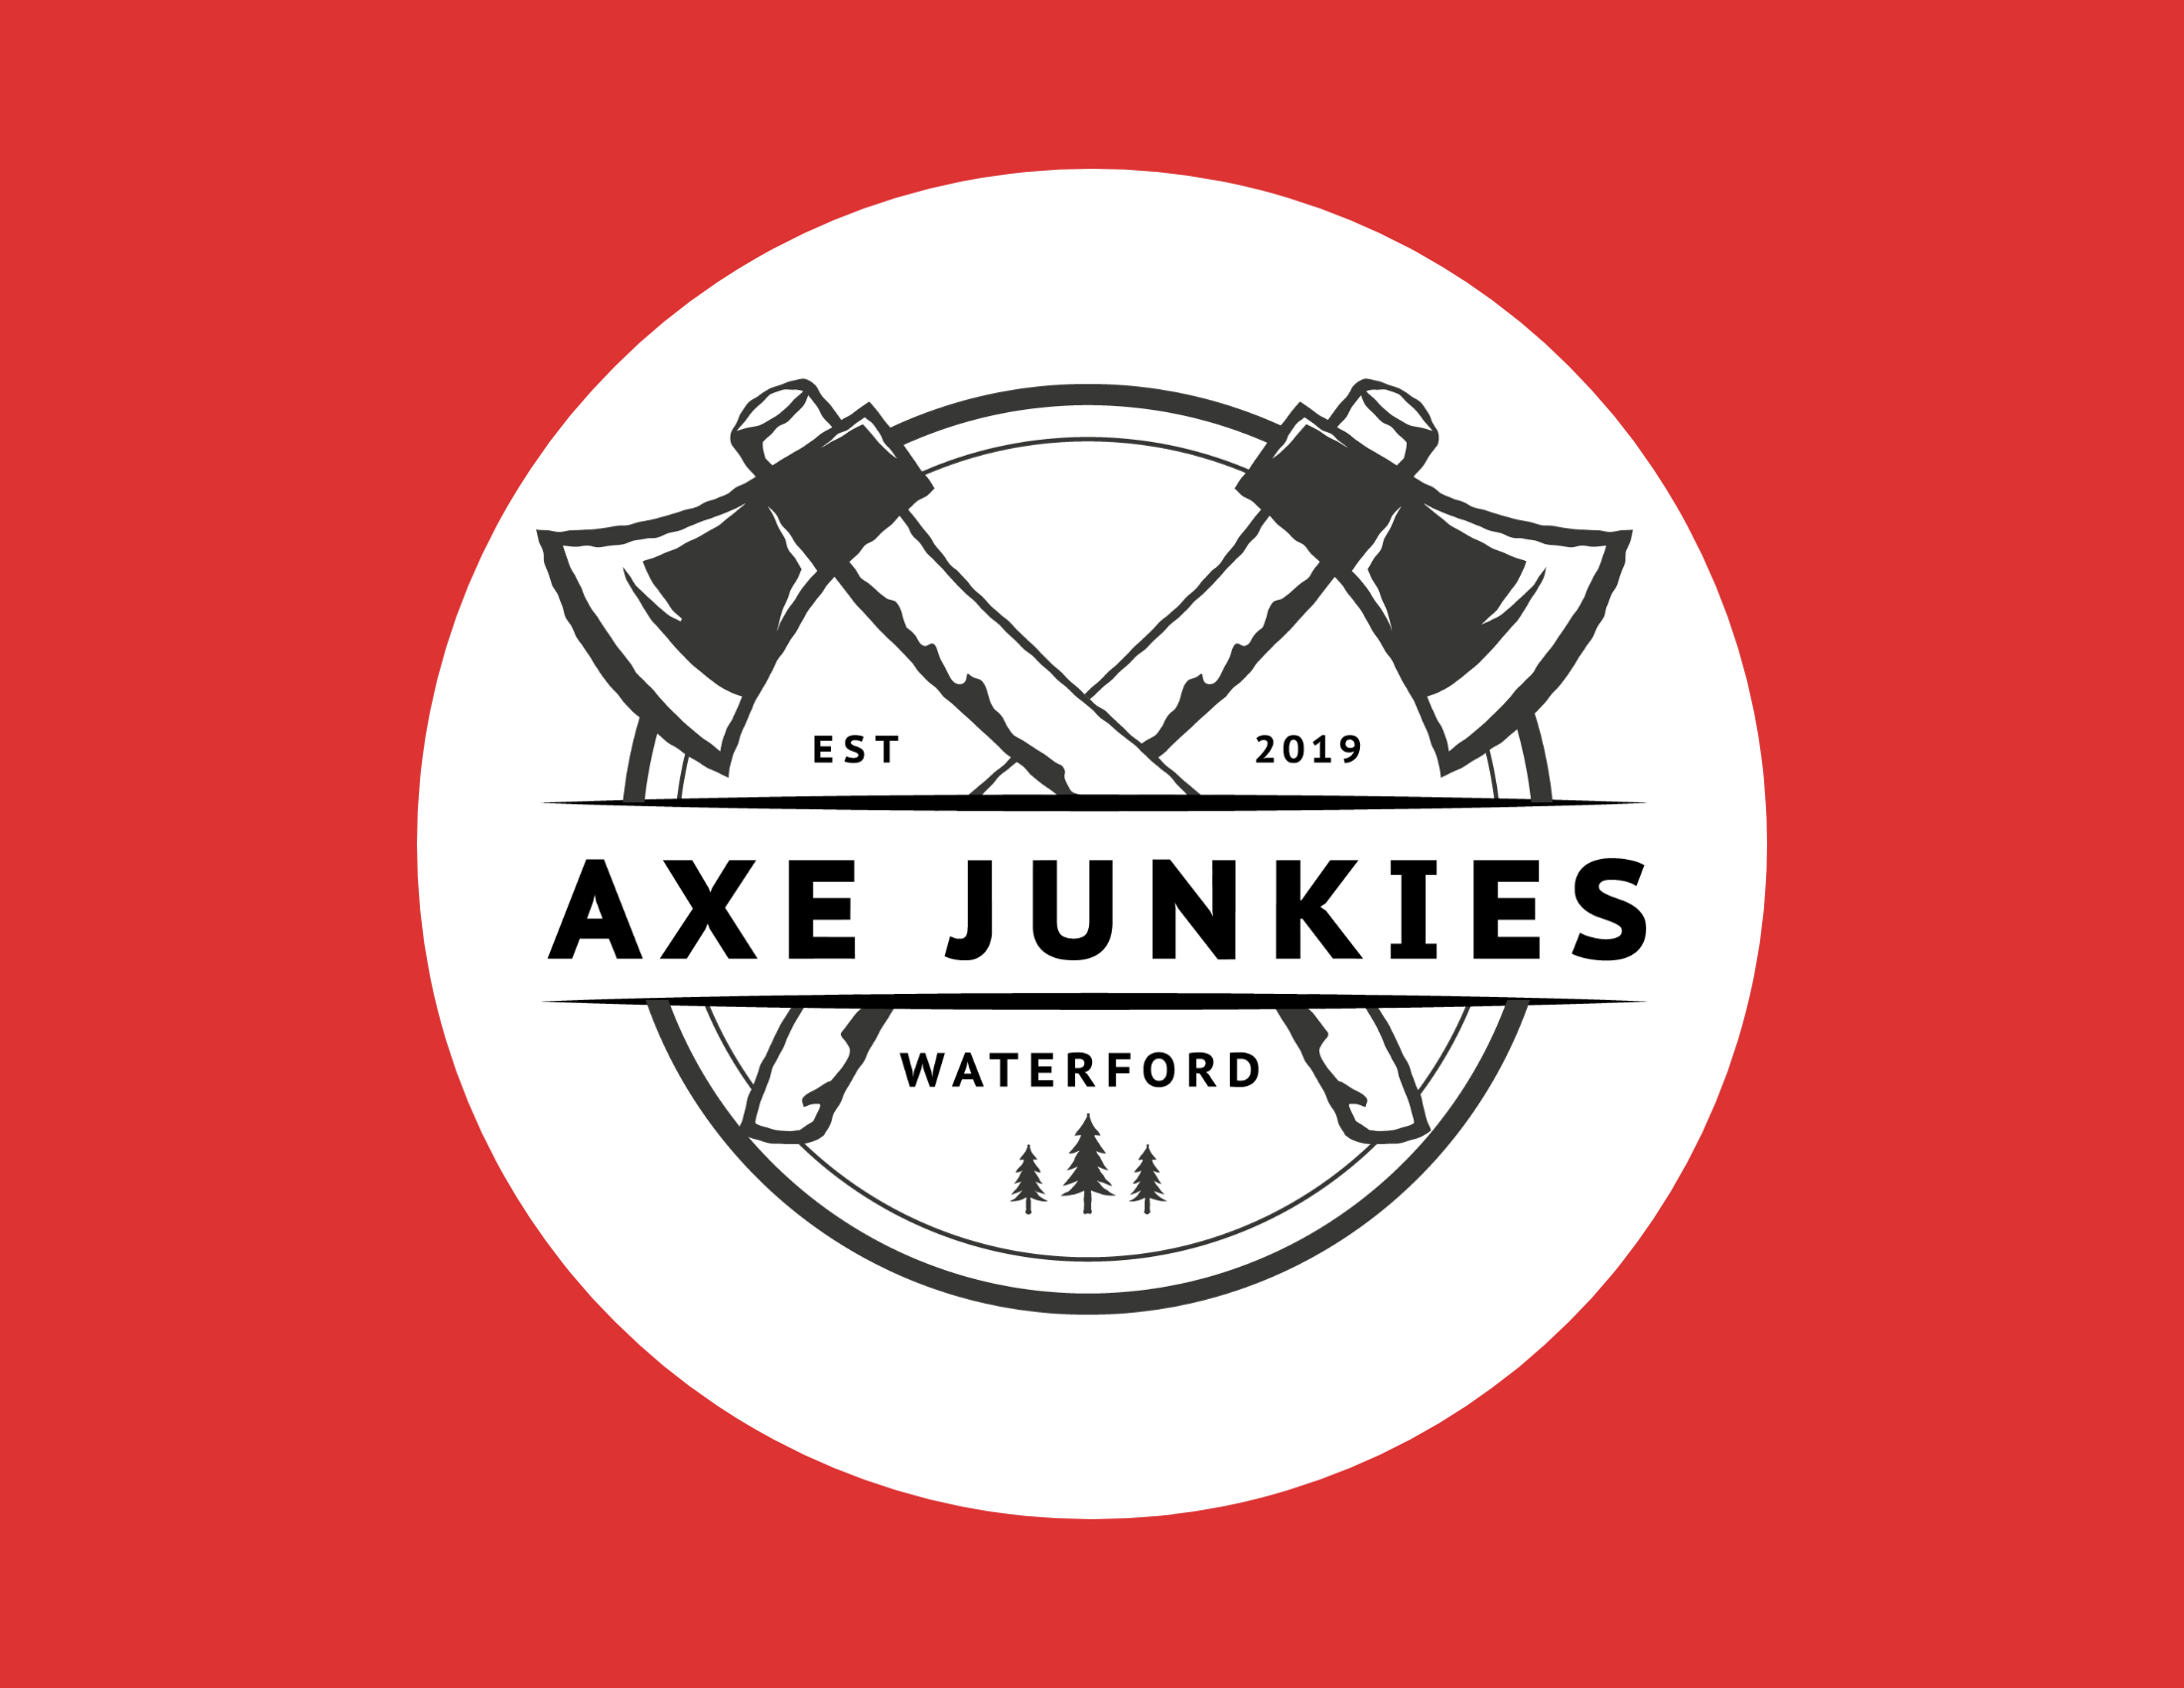 Axe junkies Logo - Urban Axe Throwing